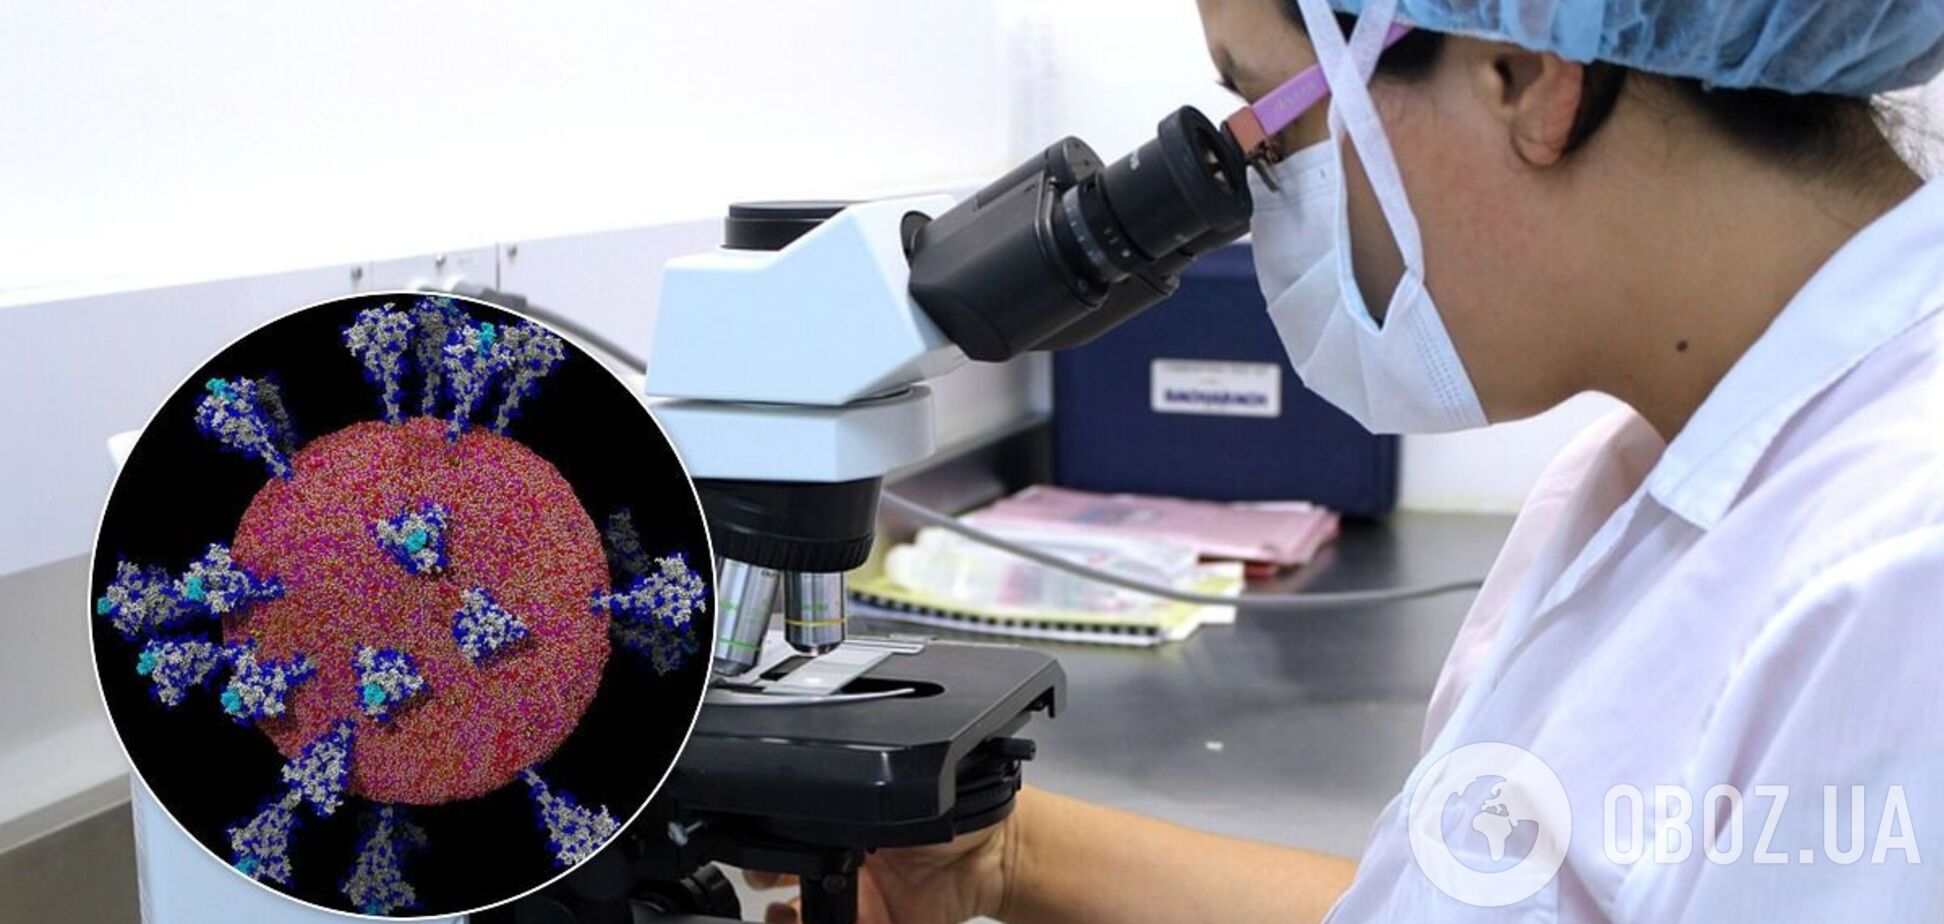 Біологи отримали нові докладні зображення коронавірусу